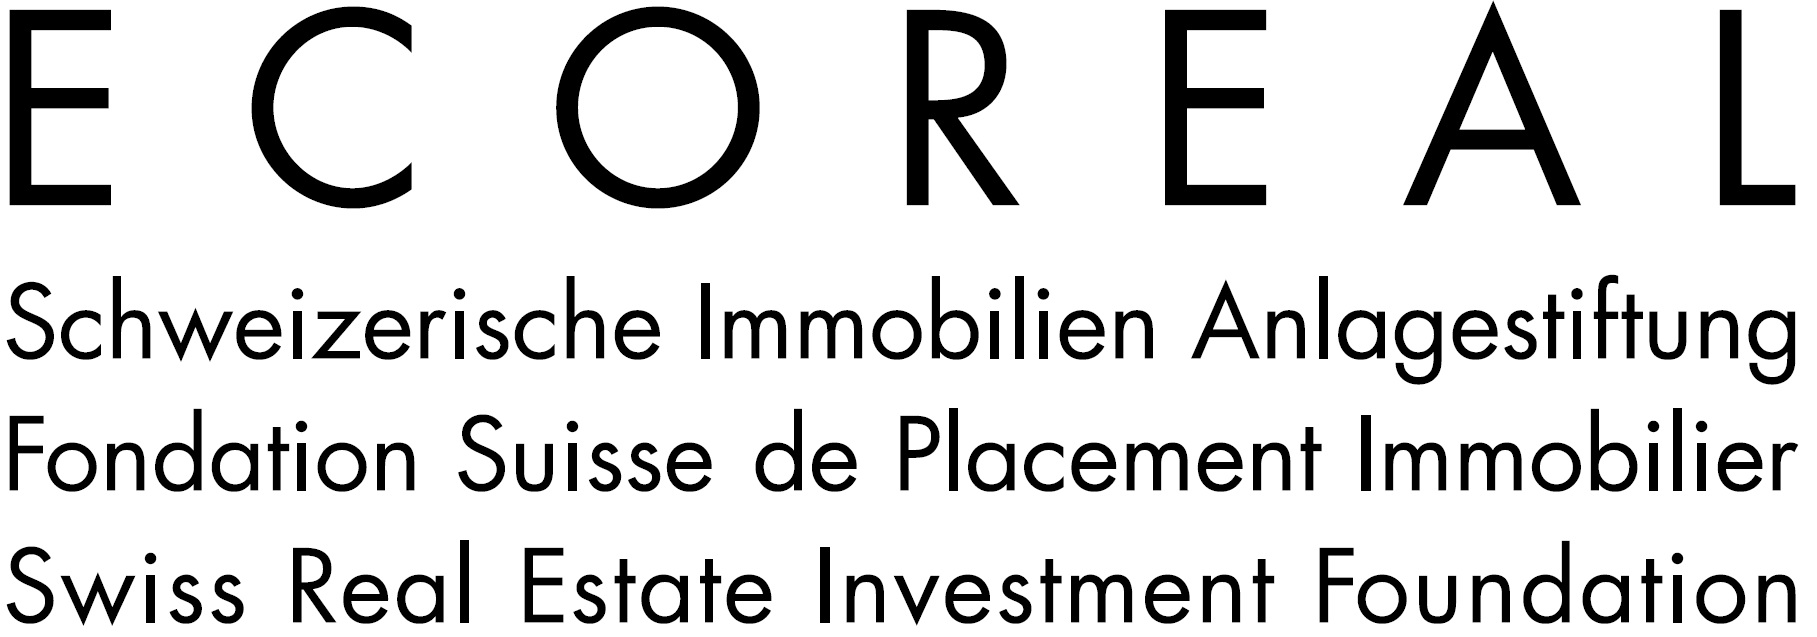 ECOREAL Schweizerische Immobilien Anlagestiftung Logo